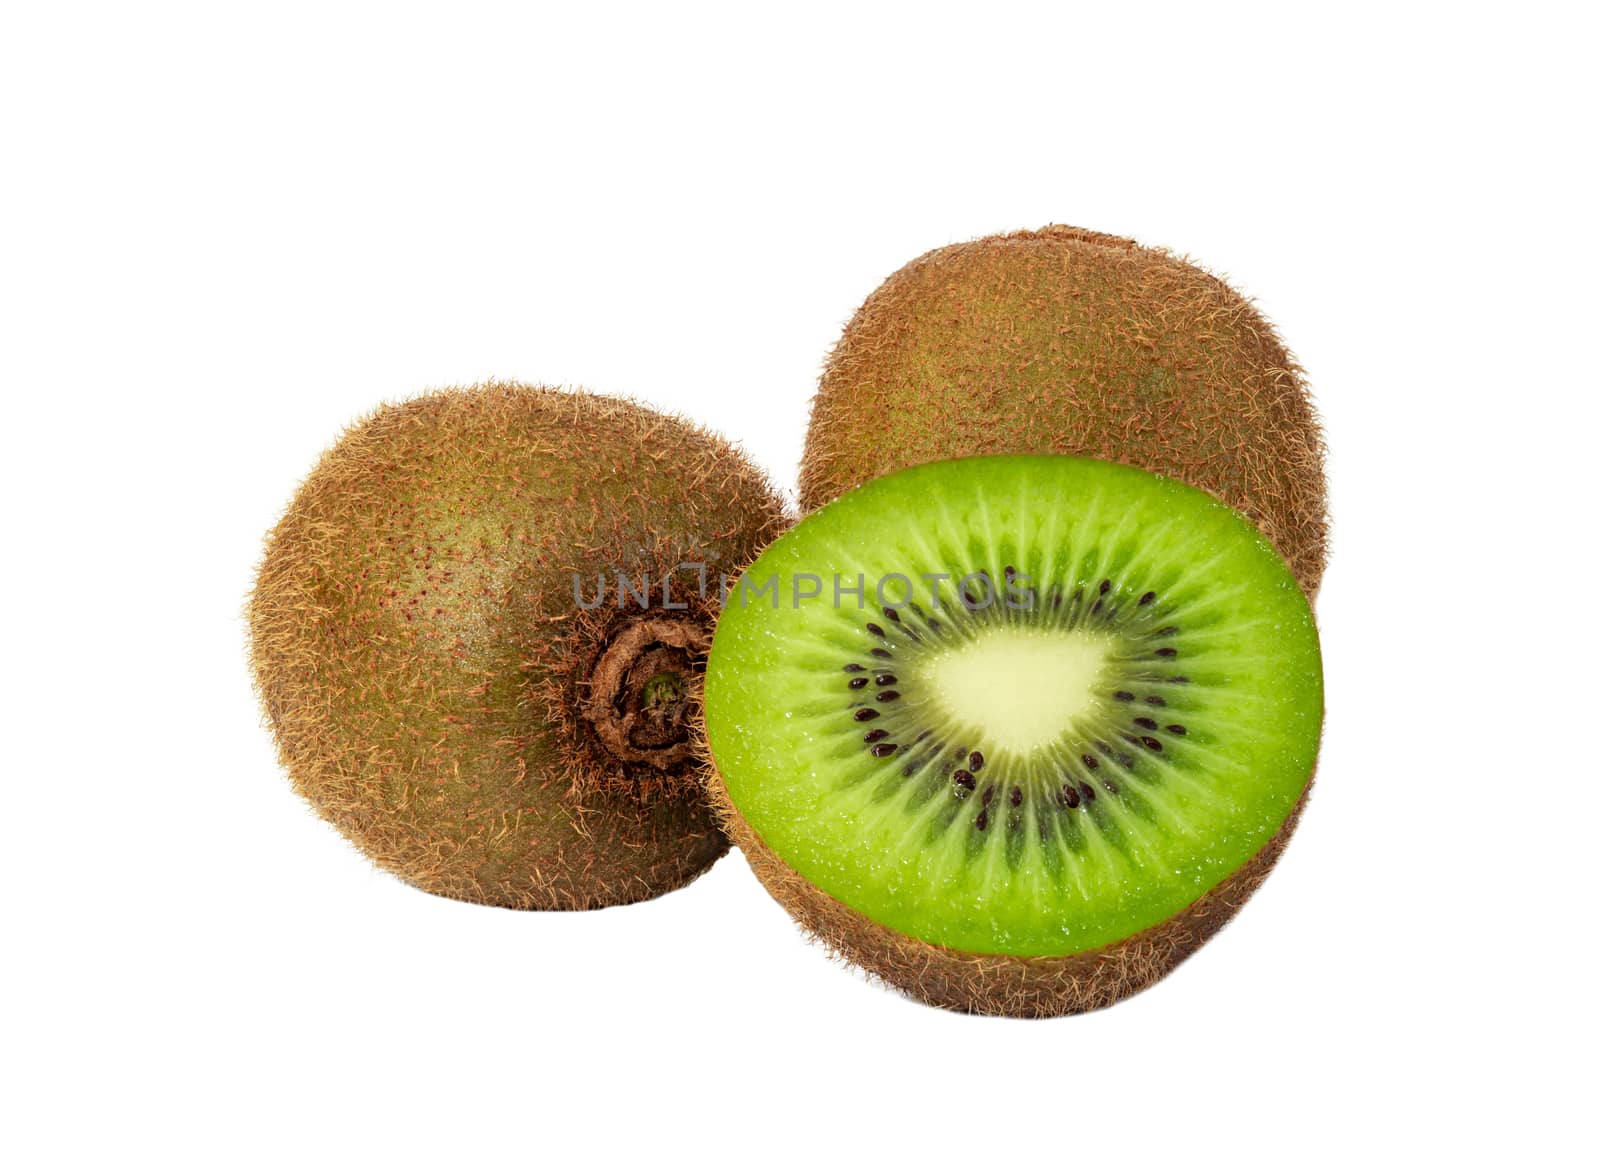 Kiwi fruit and slice isolated on white background